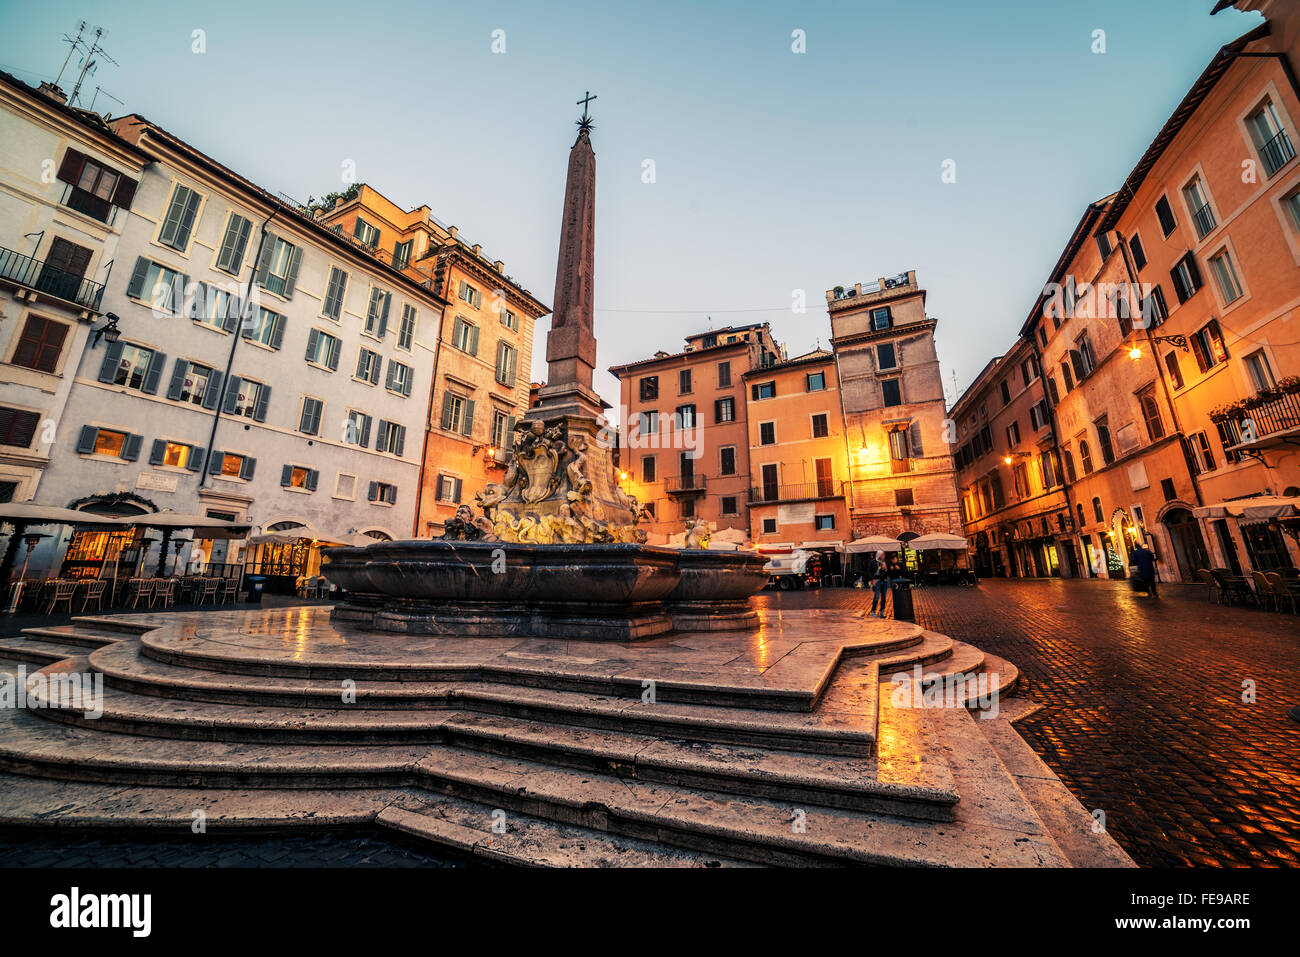 Roma, Italia: Piazza della Rotonda al mattino Foto Stock